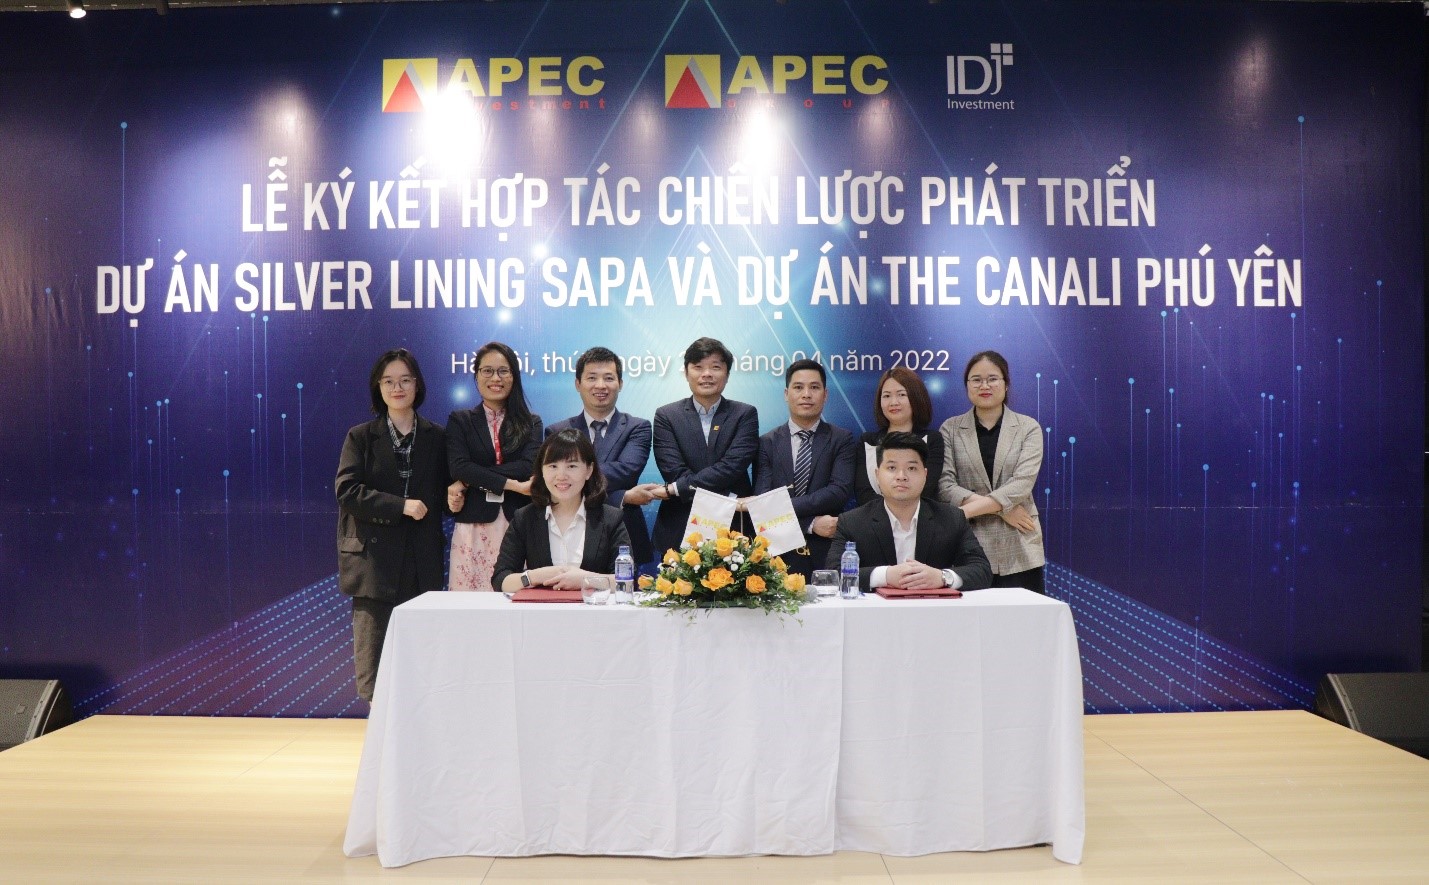 APEC Group ký kết hợp tác chiến lược phát triển các dự án mới năm 2022